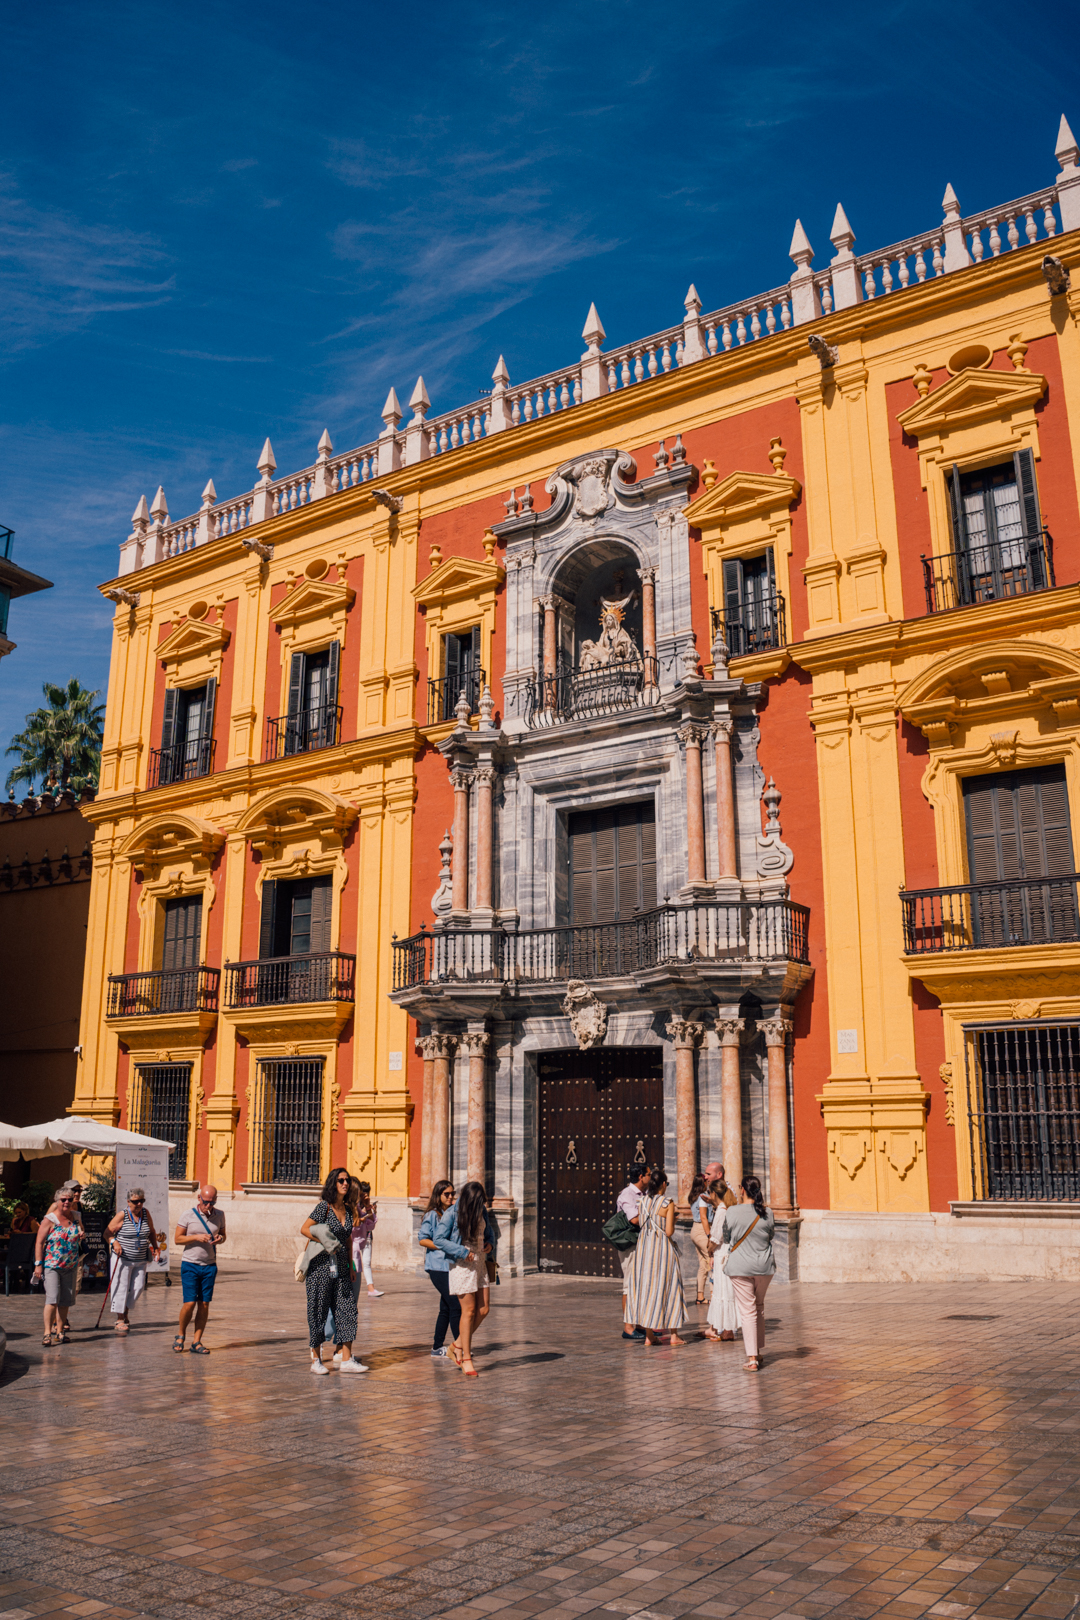 is Malaga worth visiting?